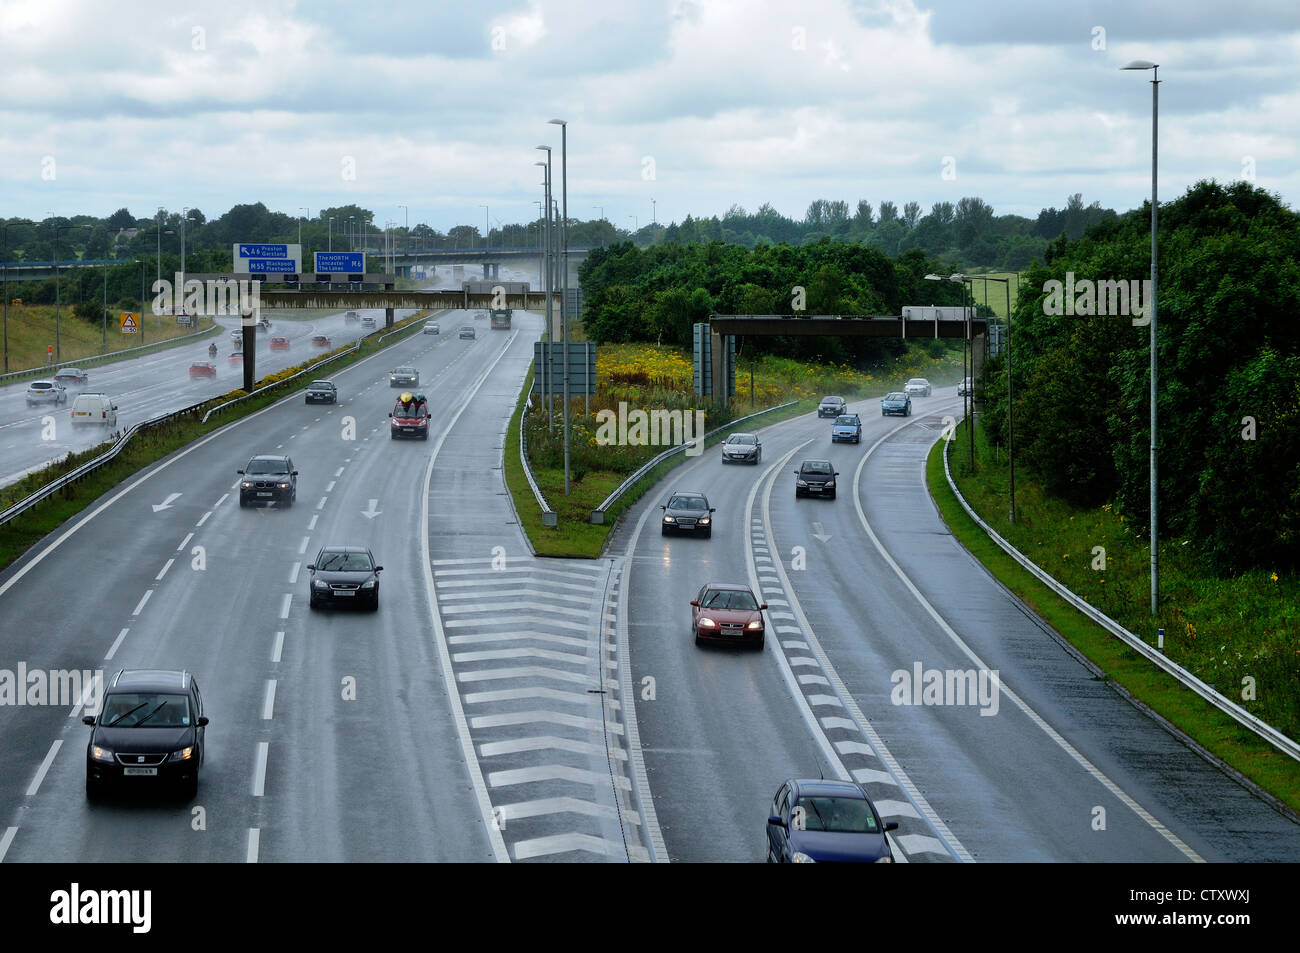 Autostrada sotto la pioggia con stile vecchia centrale di prenotazione prima barriera di aggiornamento di sicurezza Foto Stock